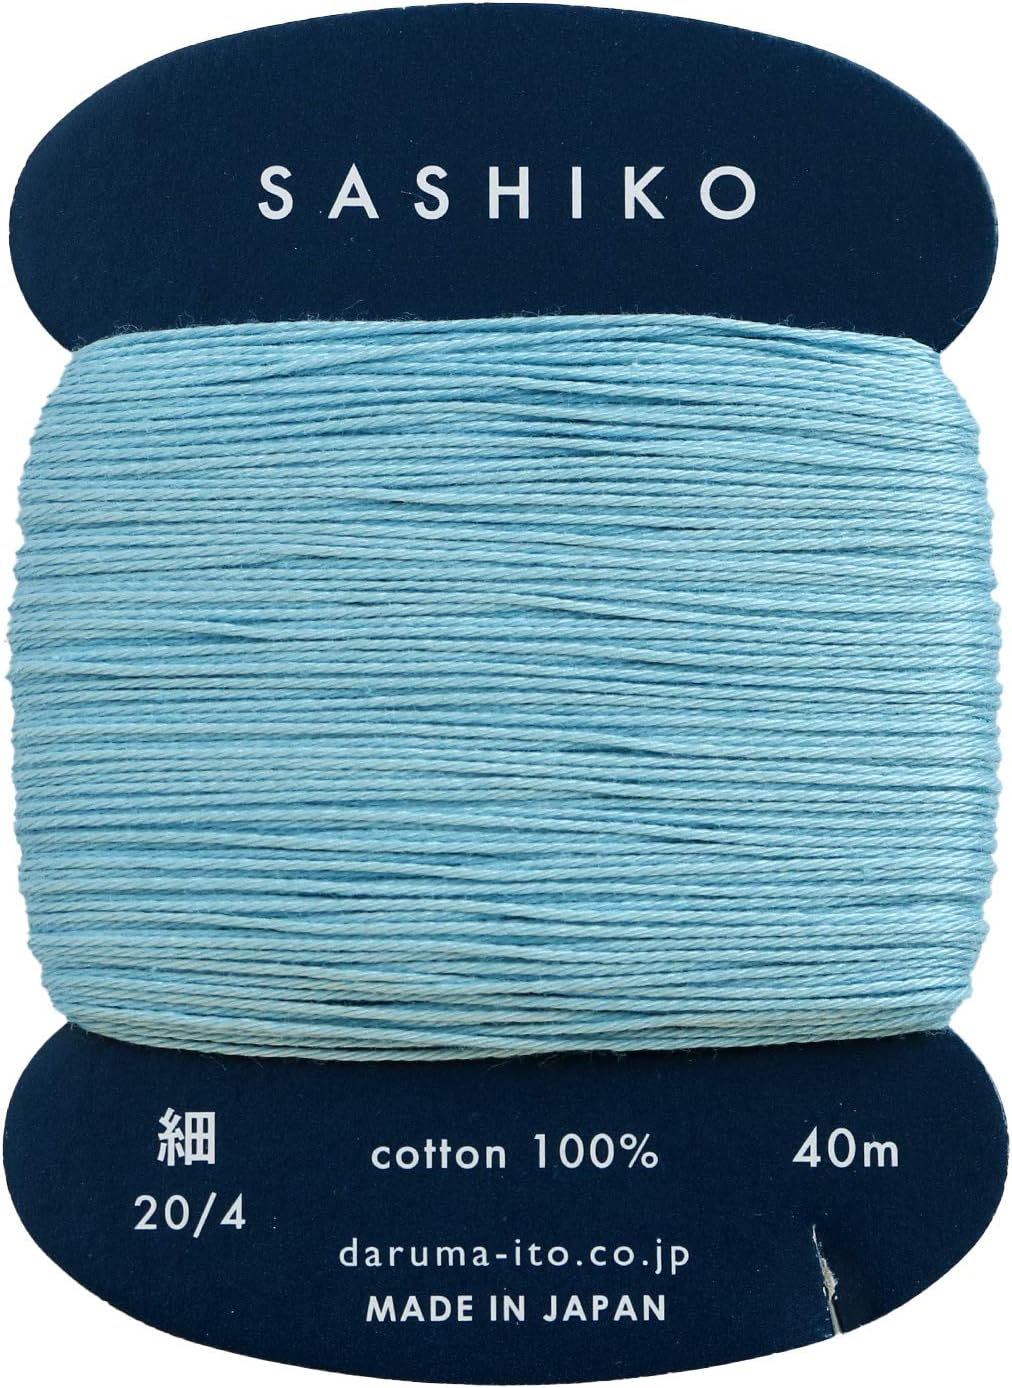 Yokota Daruma Sashiko Fine Thread 01-2400 (Cardboard Ver.)